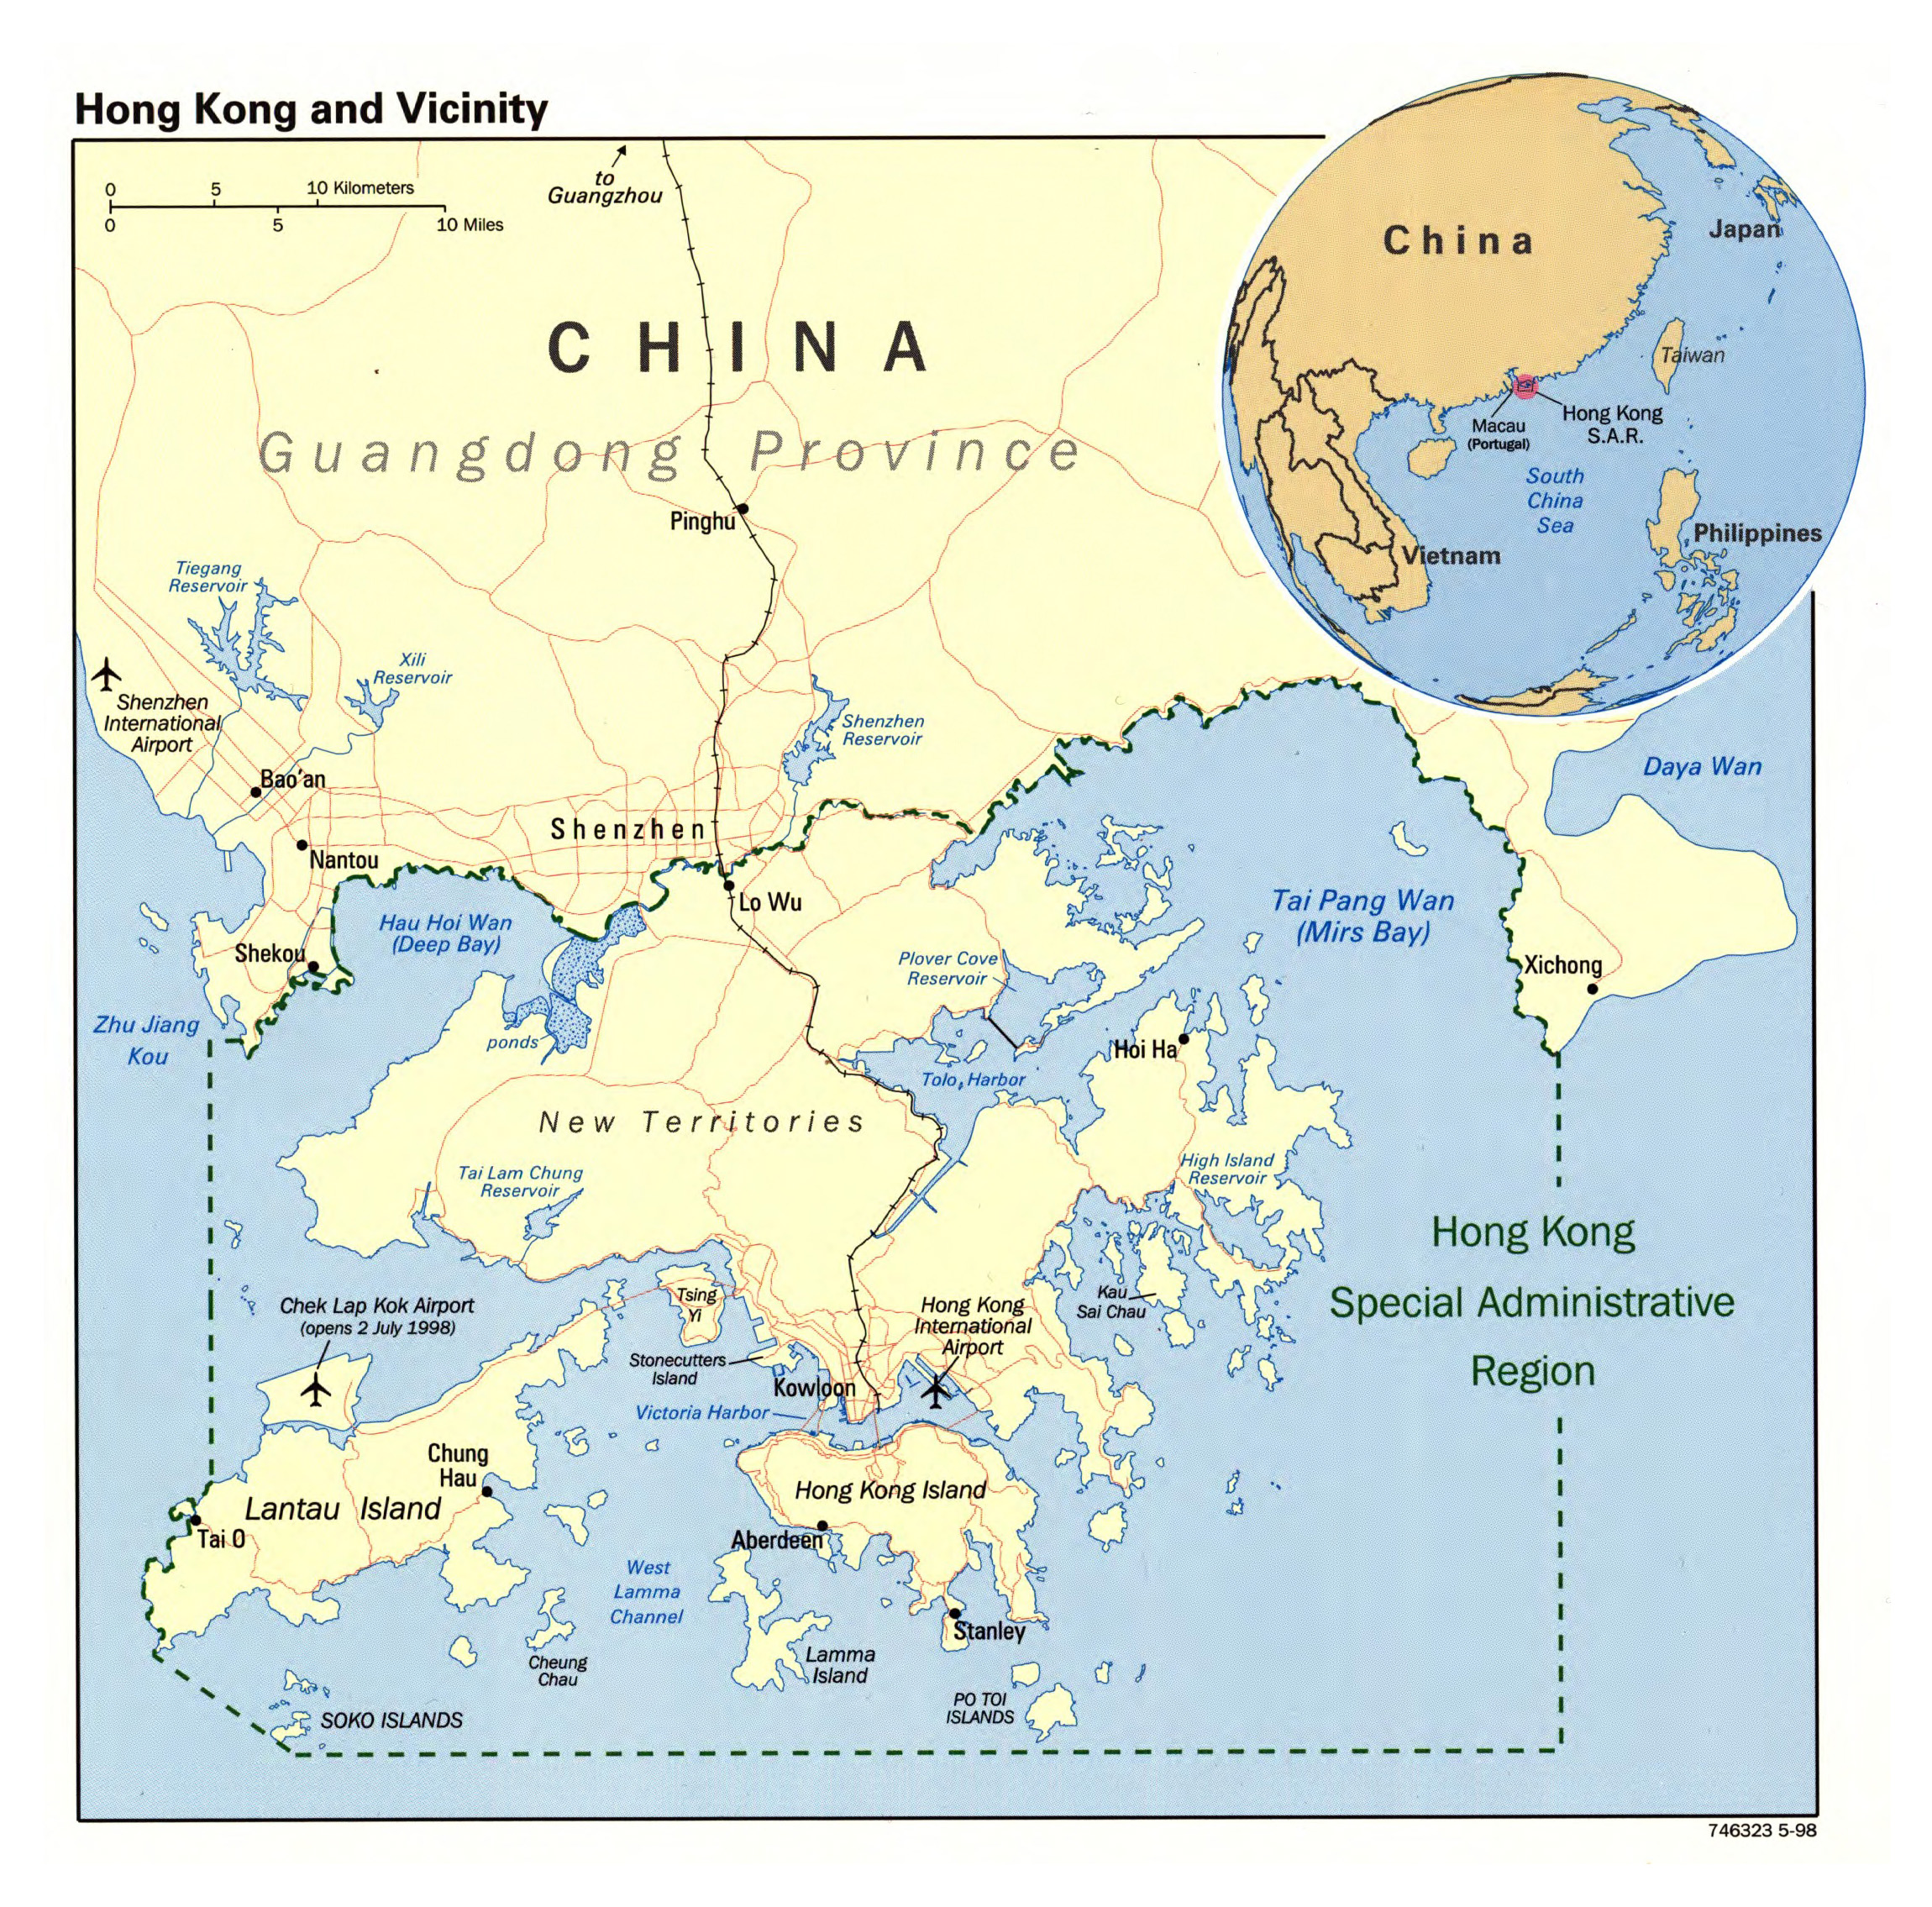 Shanghai And Hong Kong Map